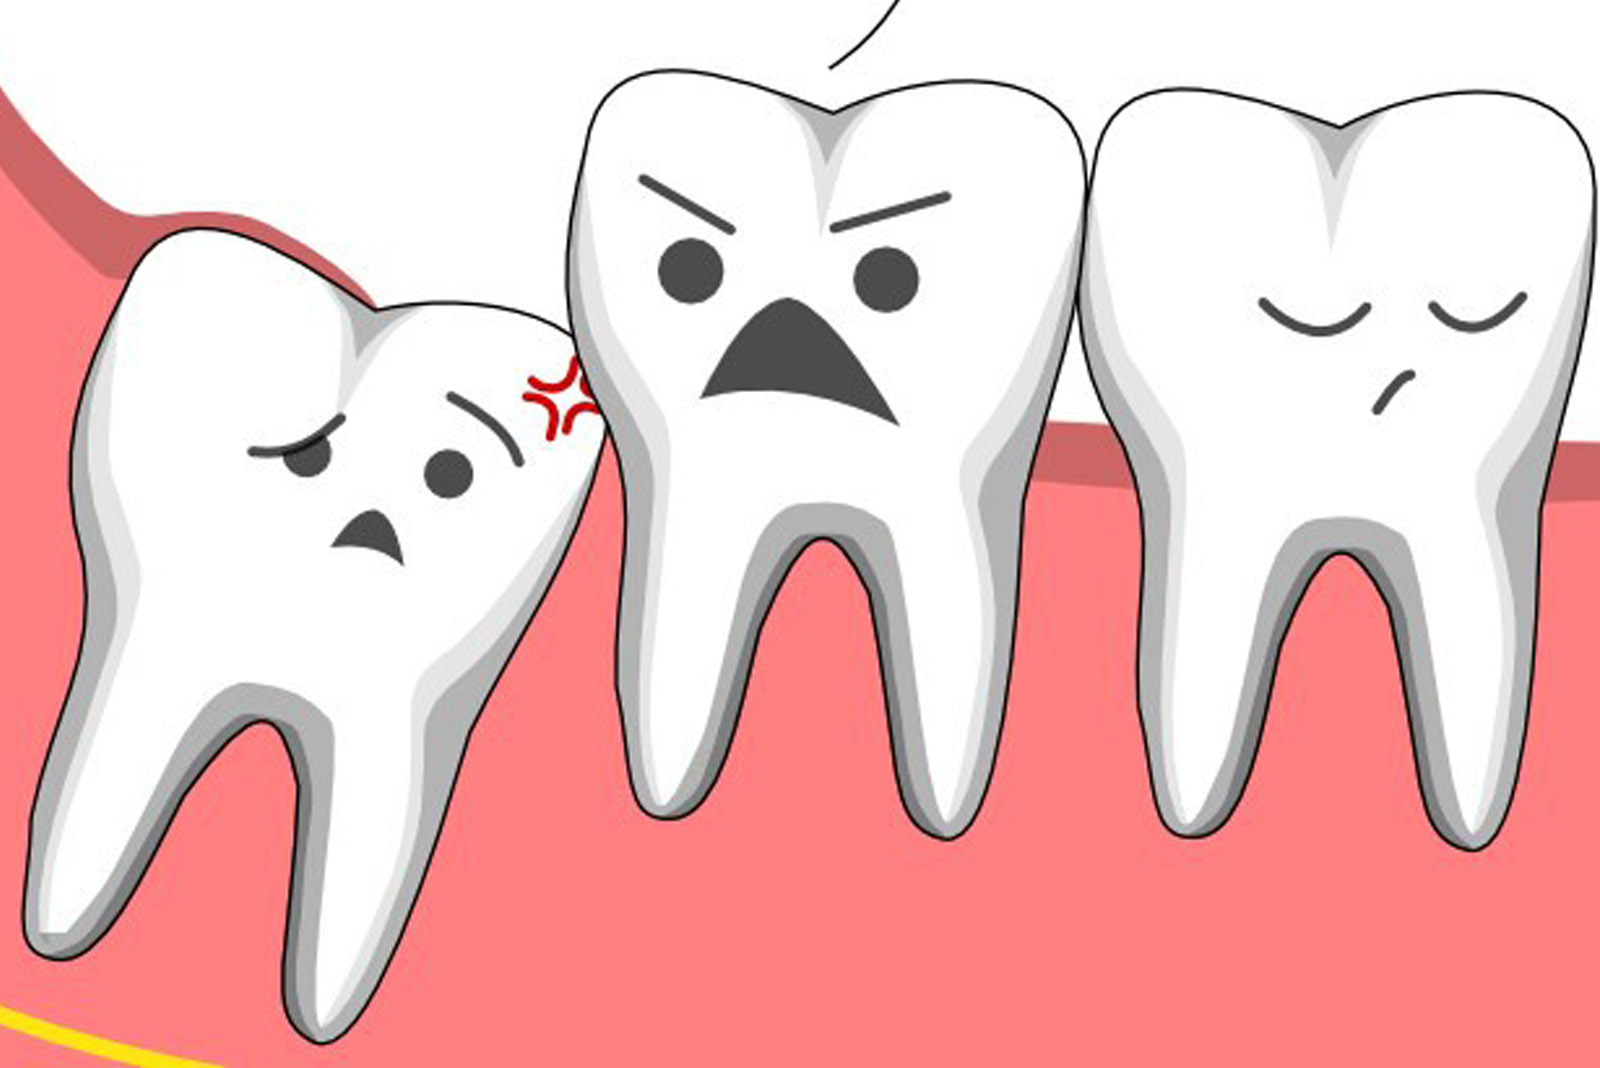 Răng khôn mọc lệch có ảnh hưởng rất lớn đến những chiếc răng bên cạnh